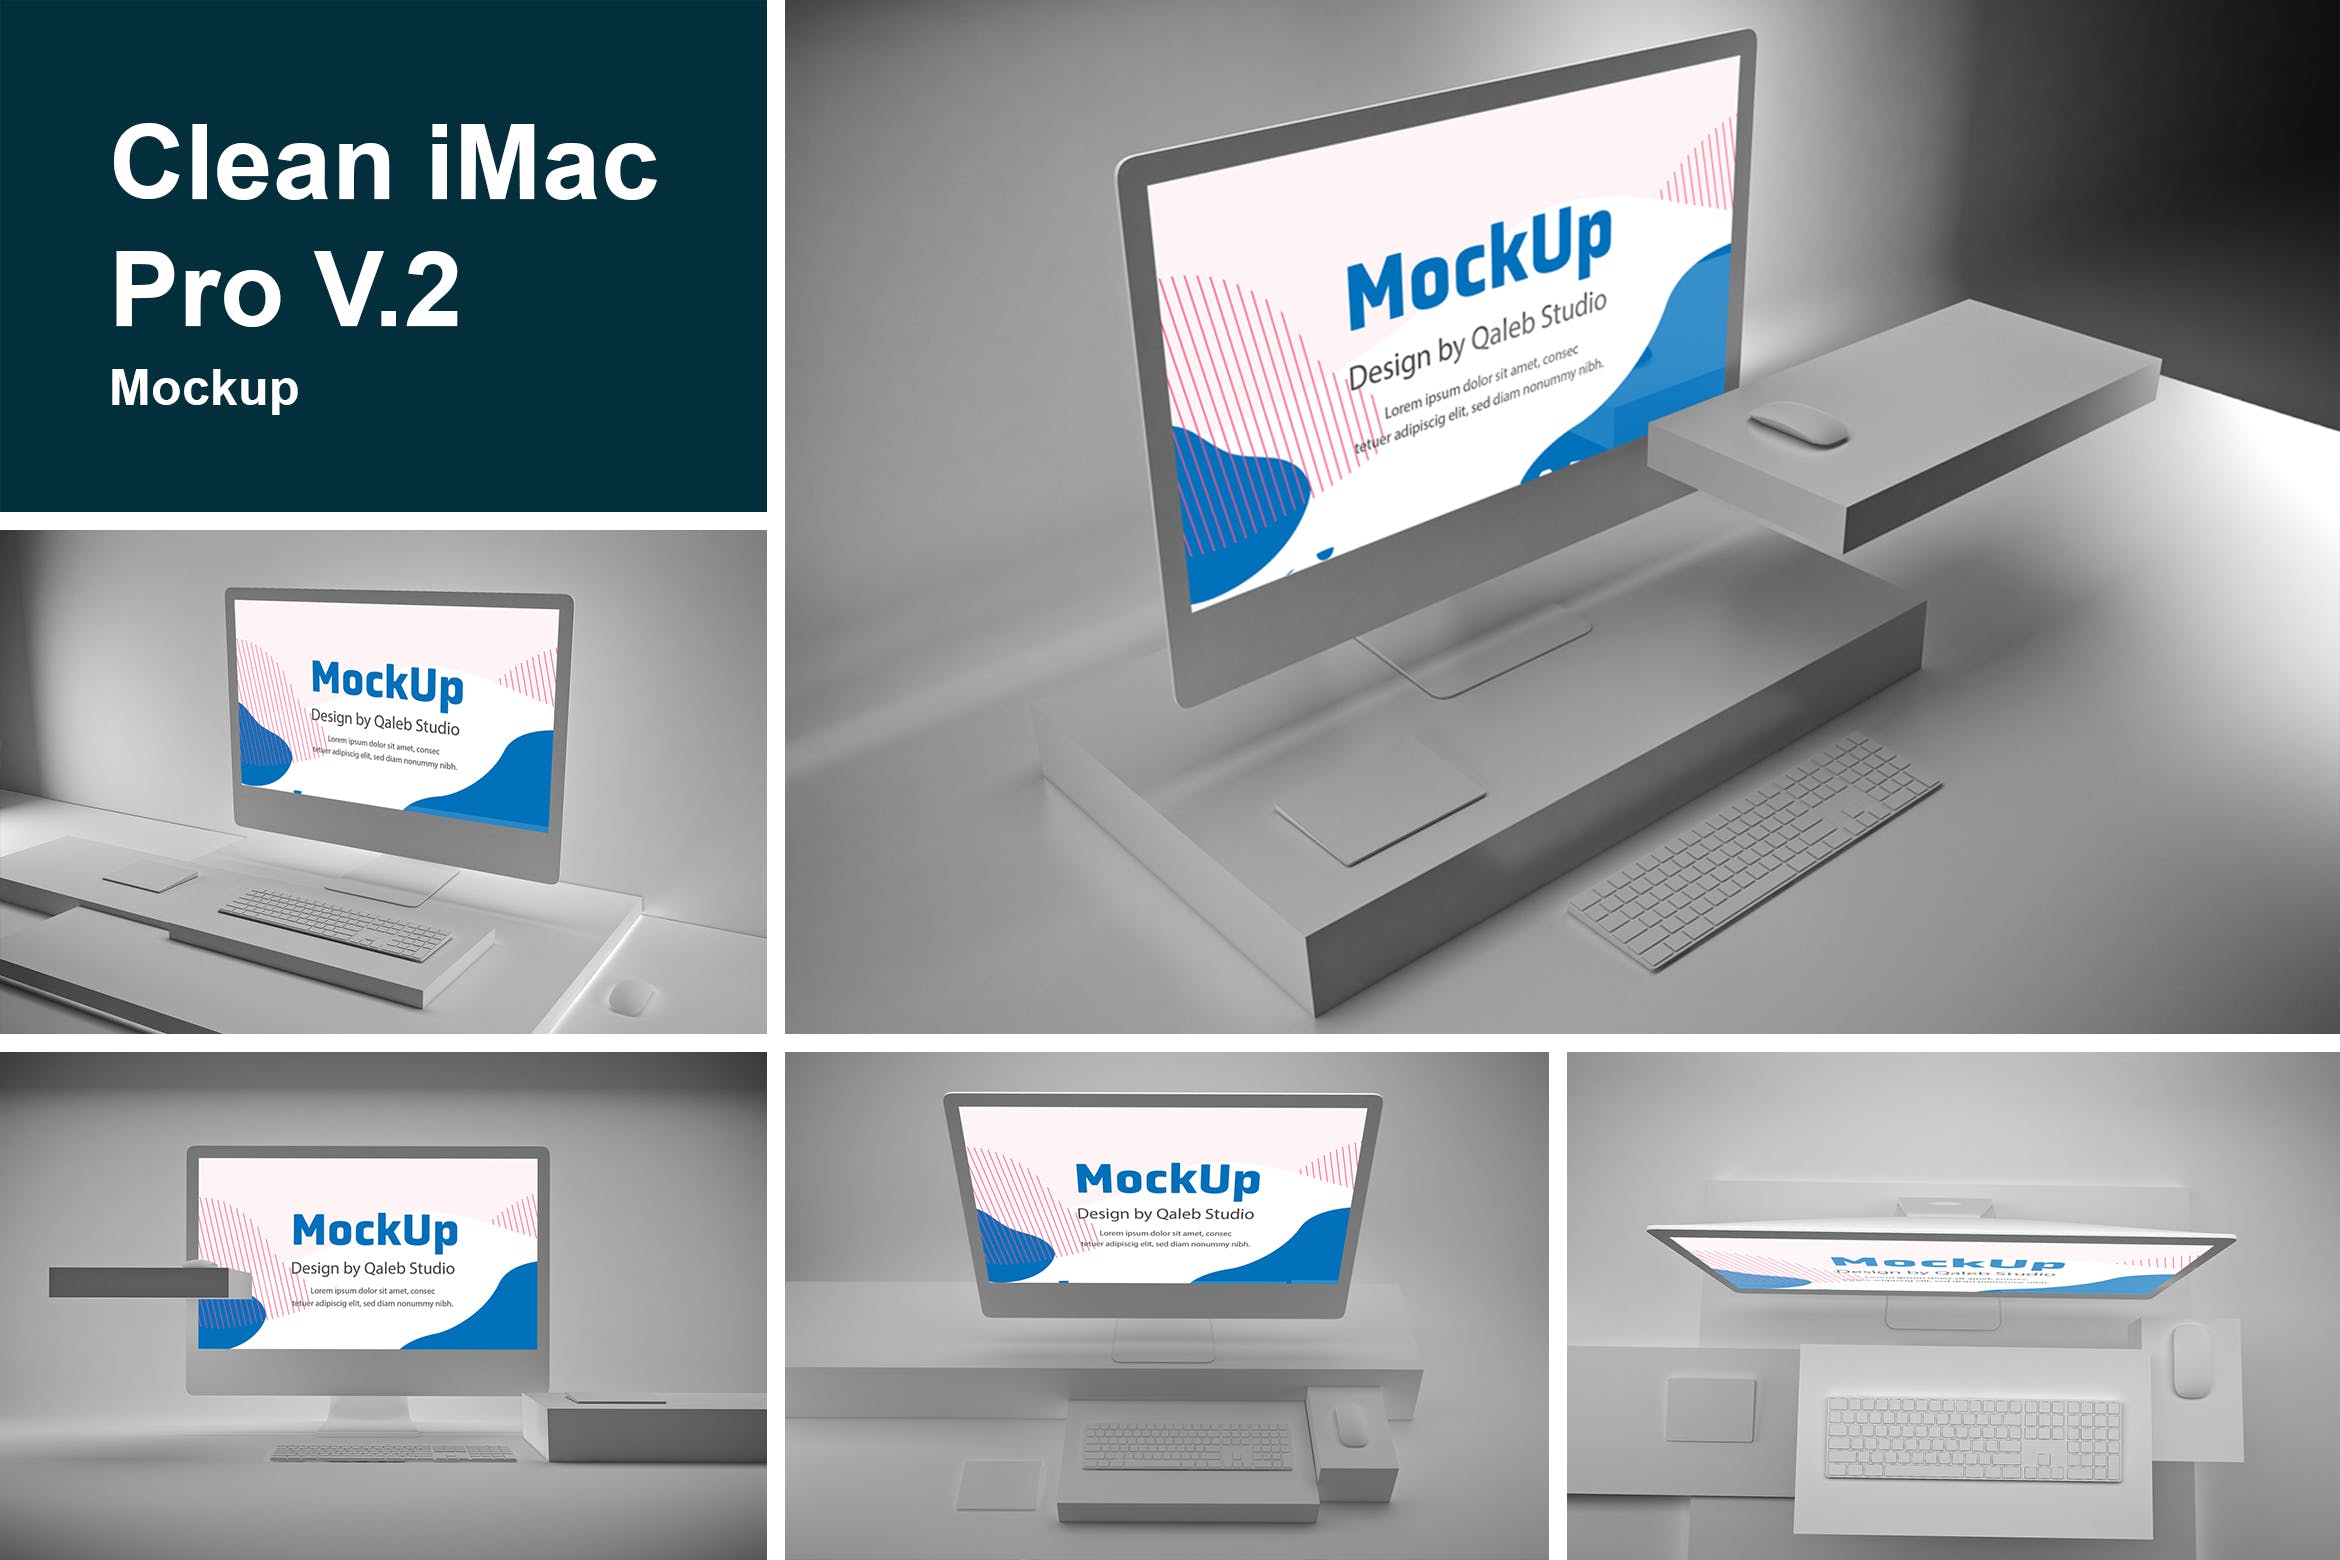 极简设计风格iMac一体机电脑样机v2 Clean iMac Pro V.2插图